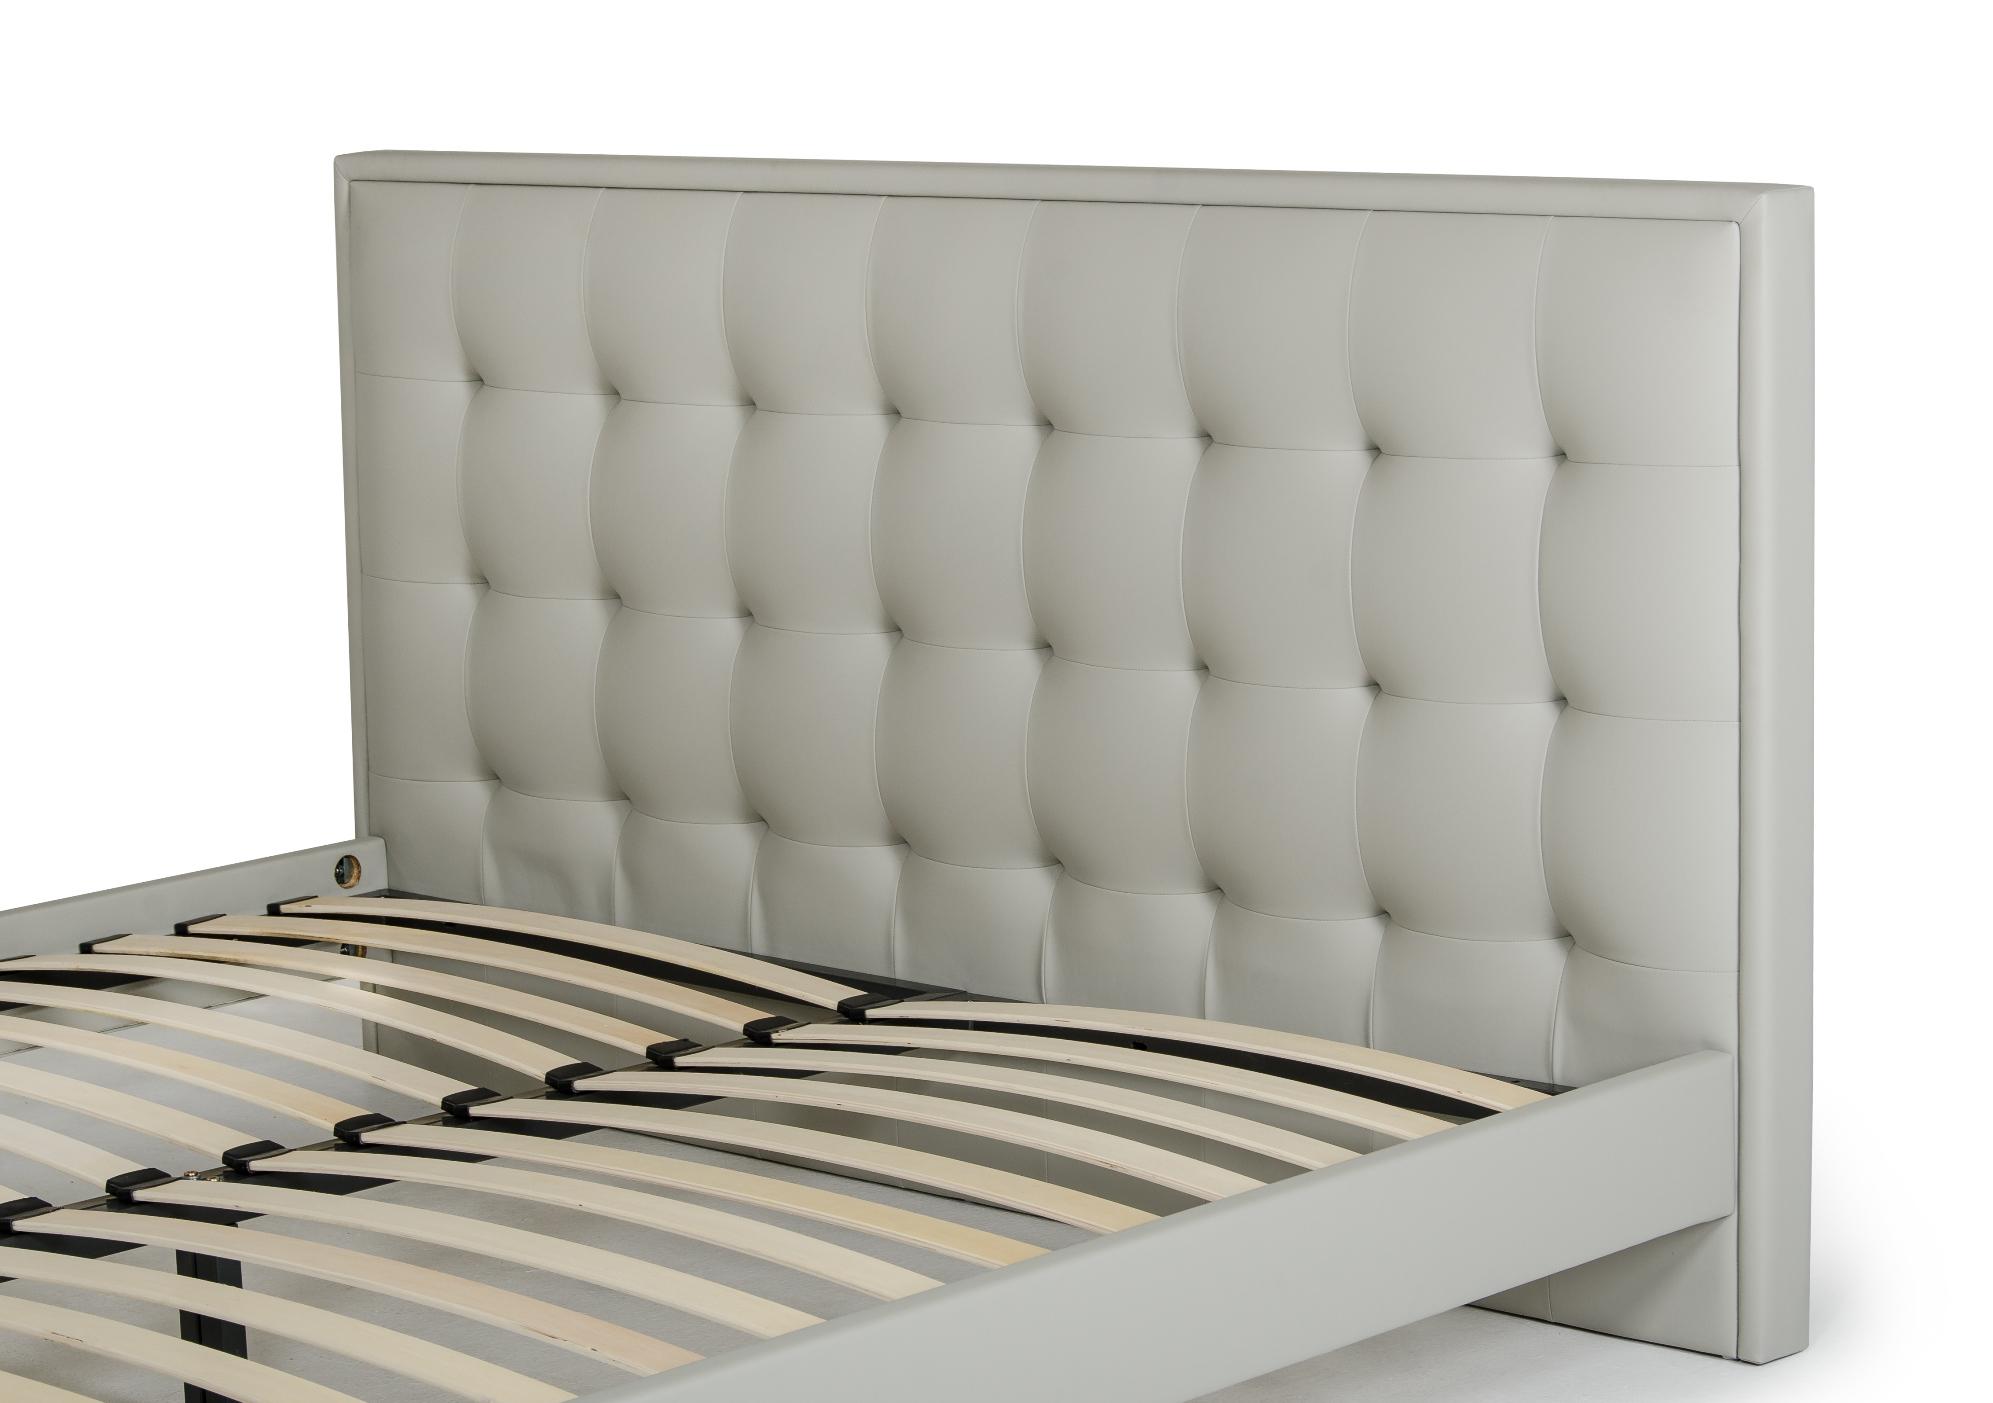 

    
VGCNHERA-BED-EK VIG Furniture Platform Bed
